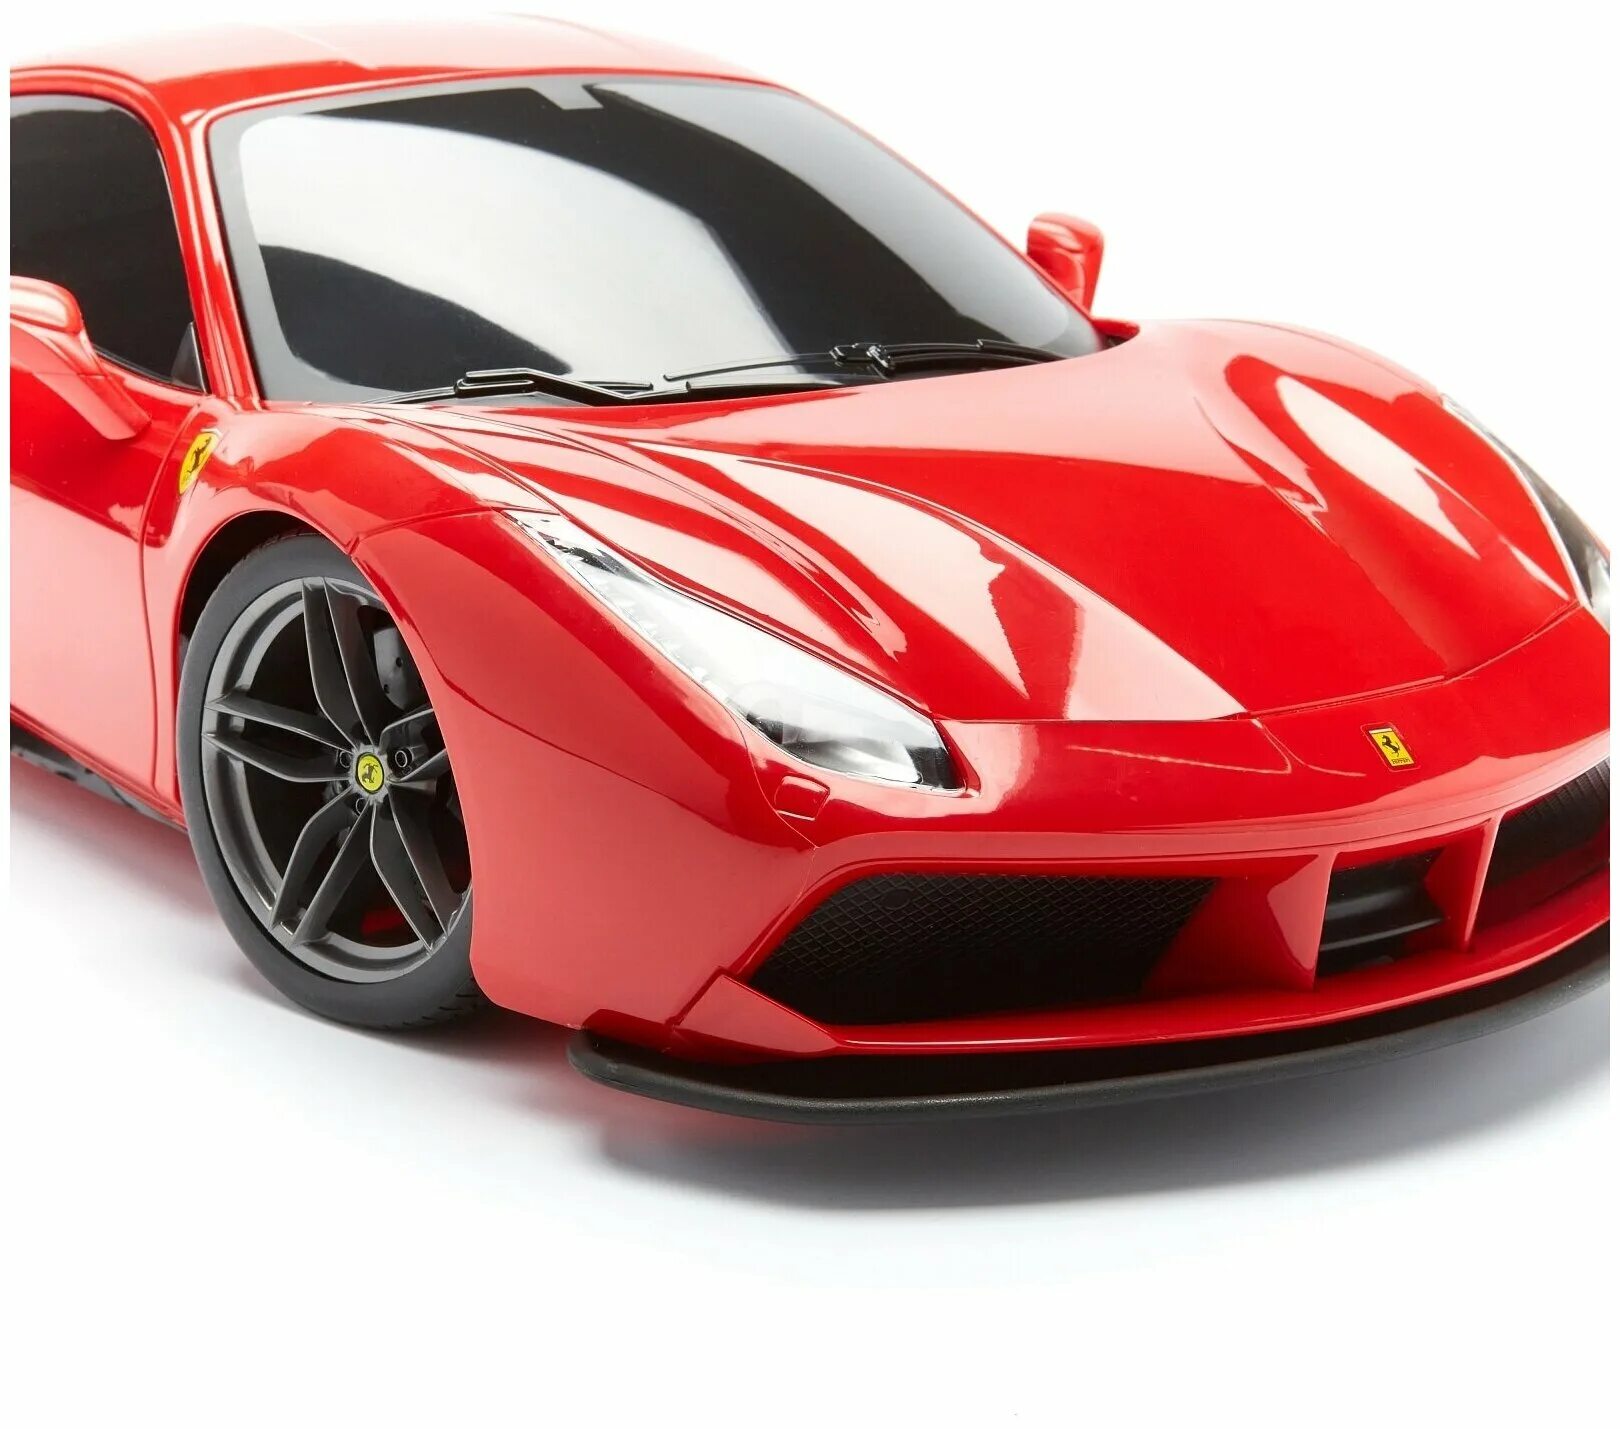 Машинки ferrari. Машина maisto 1:24 Ferrari 488 GTB красный. Машинка Феррари ф 40 желтая Велли. Конструктор гоночная машина Ferrari 488 Tehnology create 8205. Моделька машины Феррари.